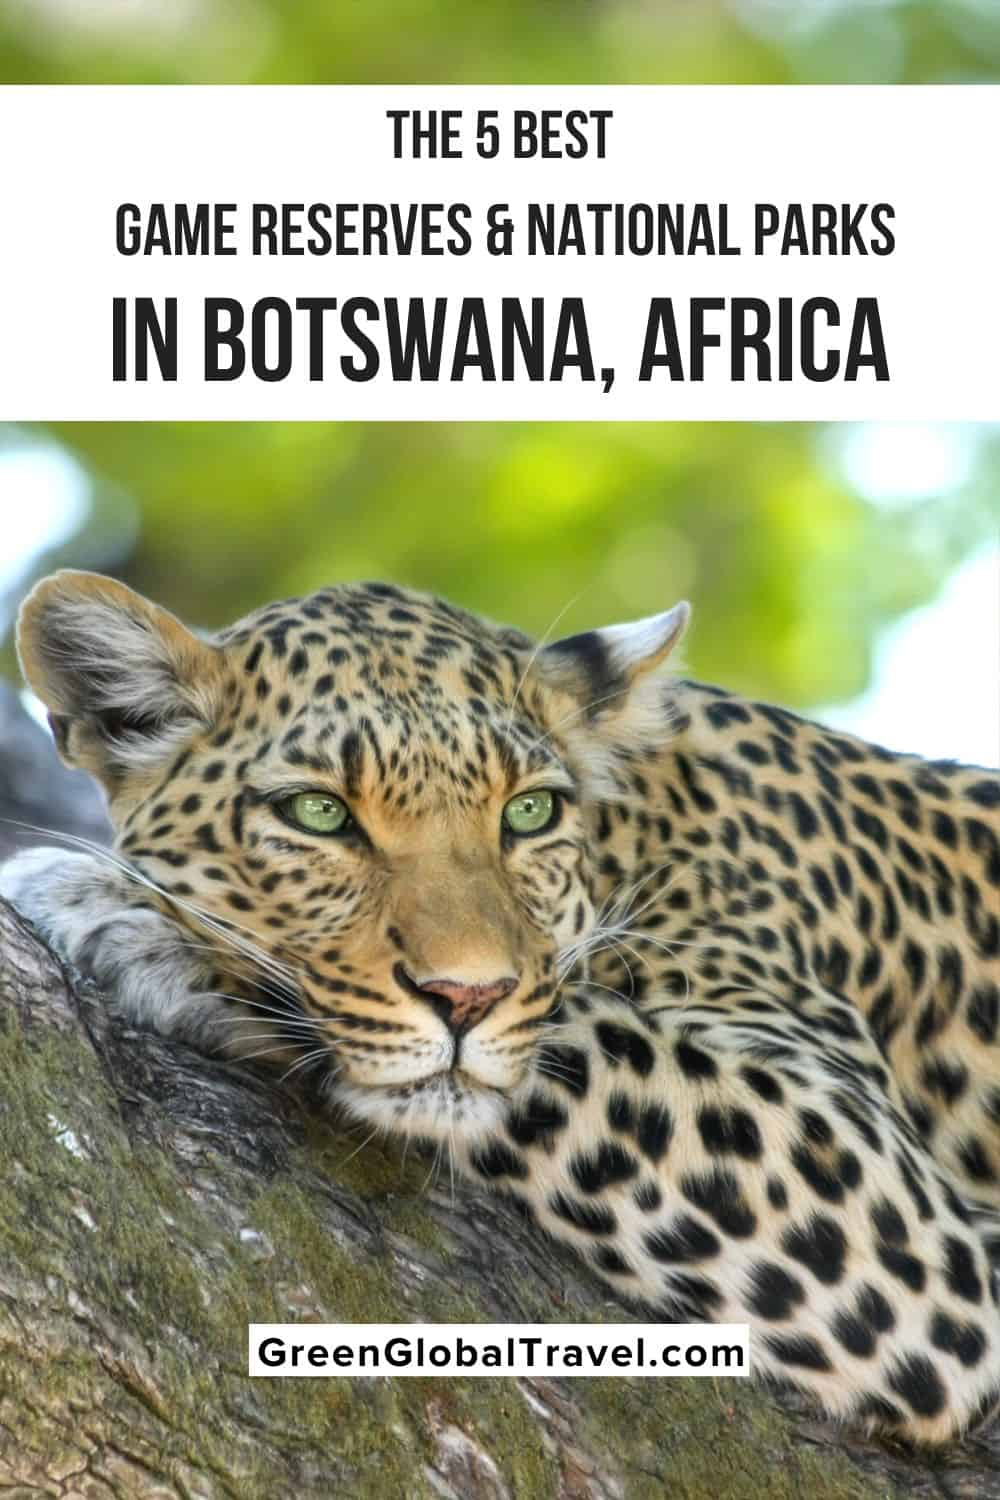 Una mirada a por qué la conservación de la vida silvestre de Botswana ha sido exitosa, y las mejores reservas de caza y parques nacionales de Botswana para visitar.  |  animales botsuana |  animales en botsuana |  animales de botsuana |  fauna en botswana fauna en botswana |  atracciones de botsuana |  mejores safaris en botswana |  animales kalahari |  safari africano en botsuana |  safari de vida salvaje en botswana |  safari de vida silvestre en botswana | safaris de vida silvestre en botswana